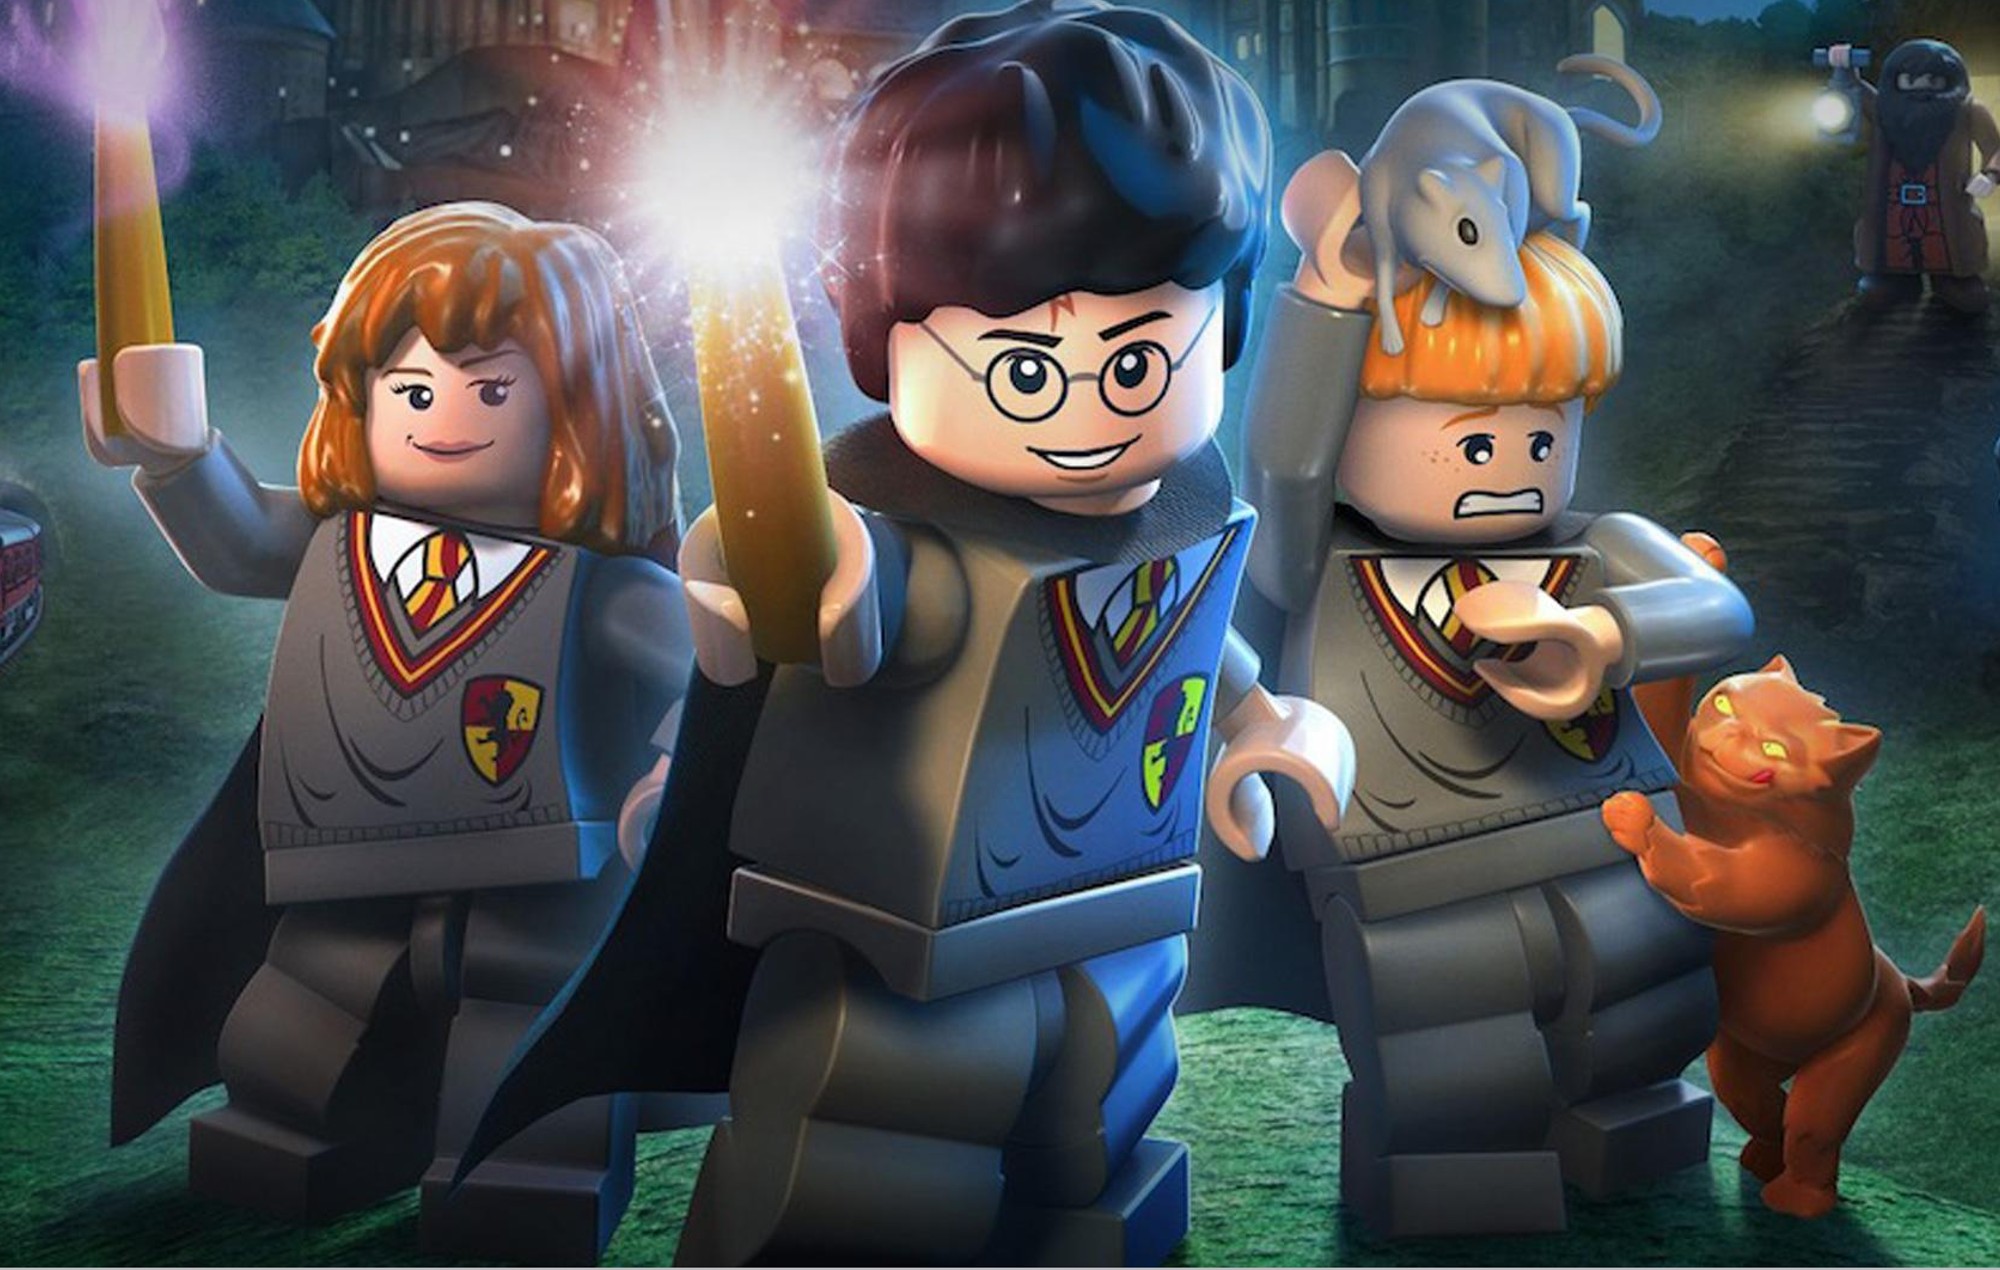 Un nuevo juego de "Lego Harry Potter" aparece en las redes sociales, según un informe